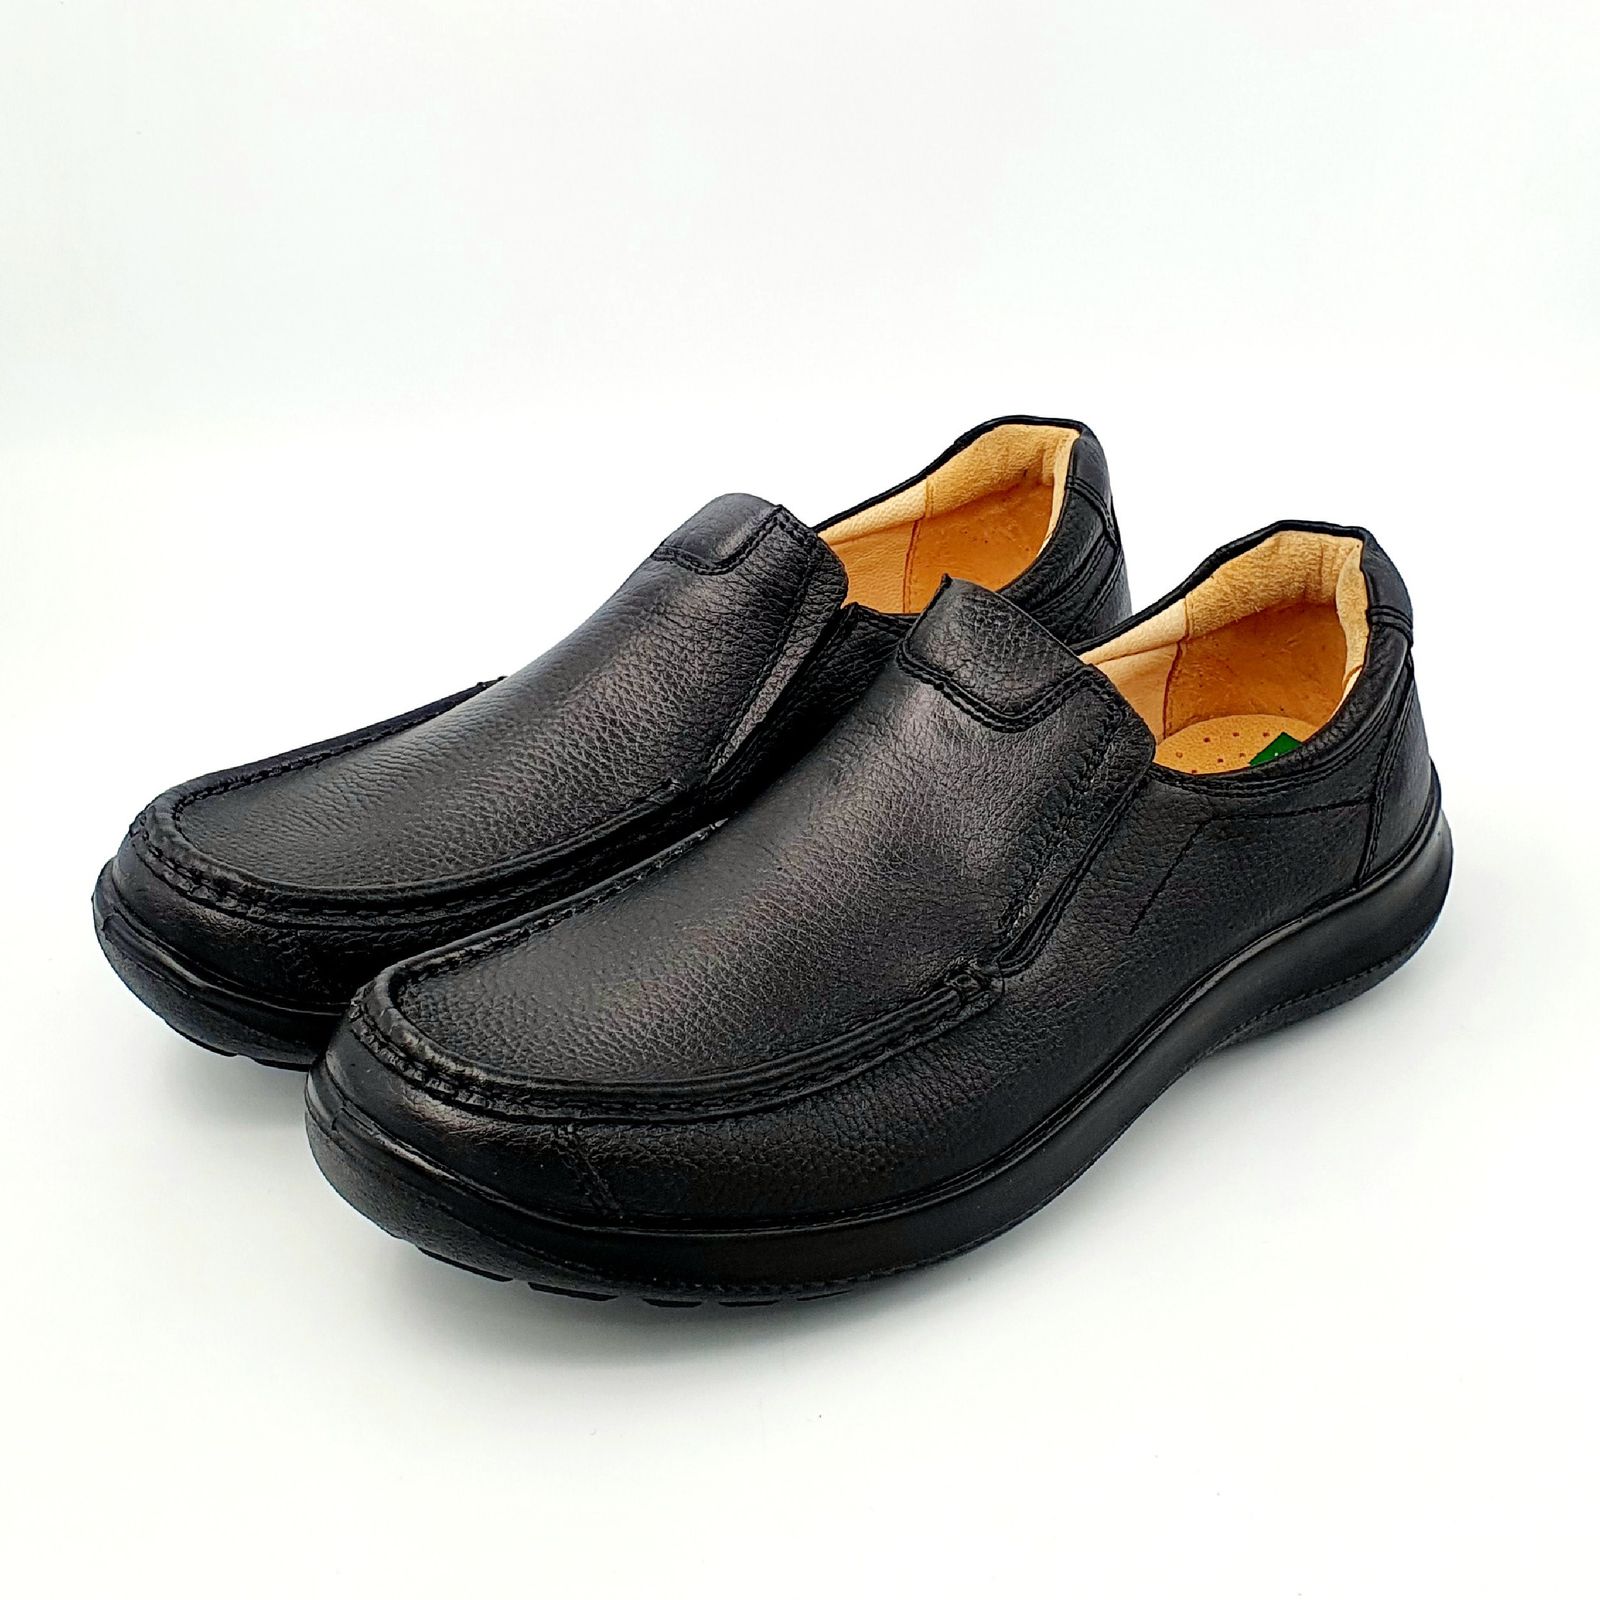 کفش روزمره مردانه شرکت کفش البرز مدل KV کد 2383-2 -  - 2